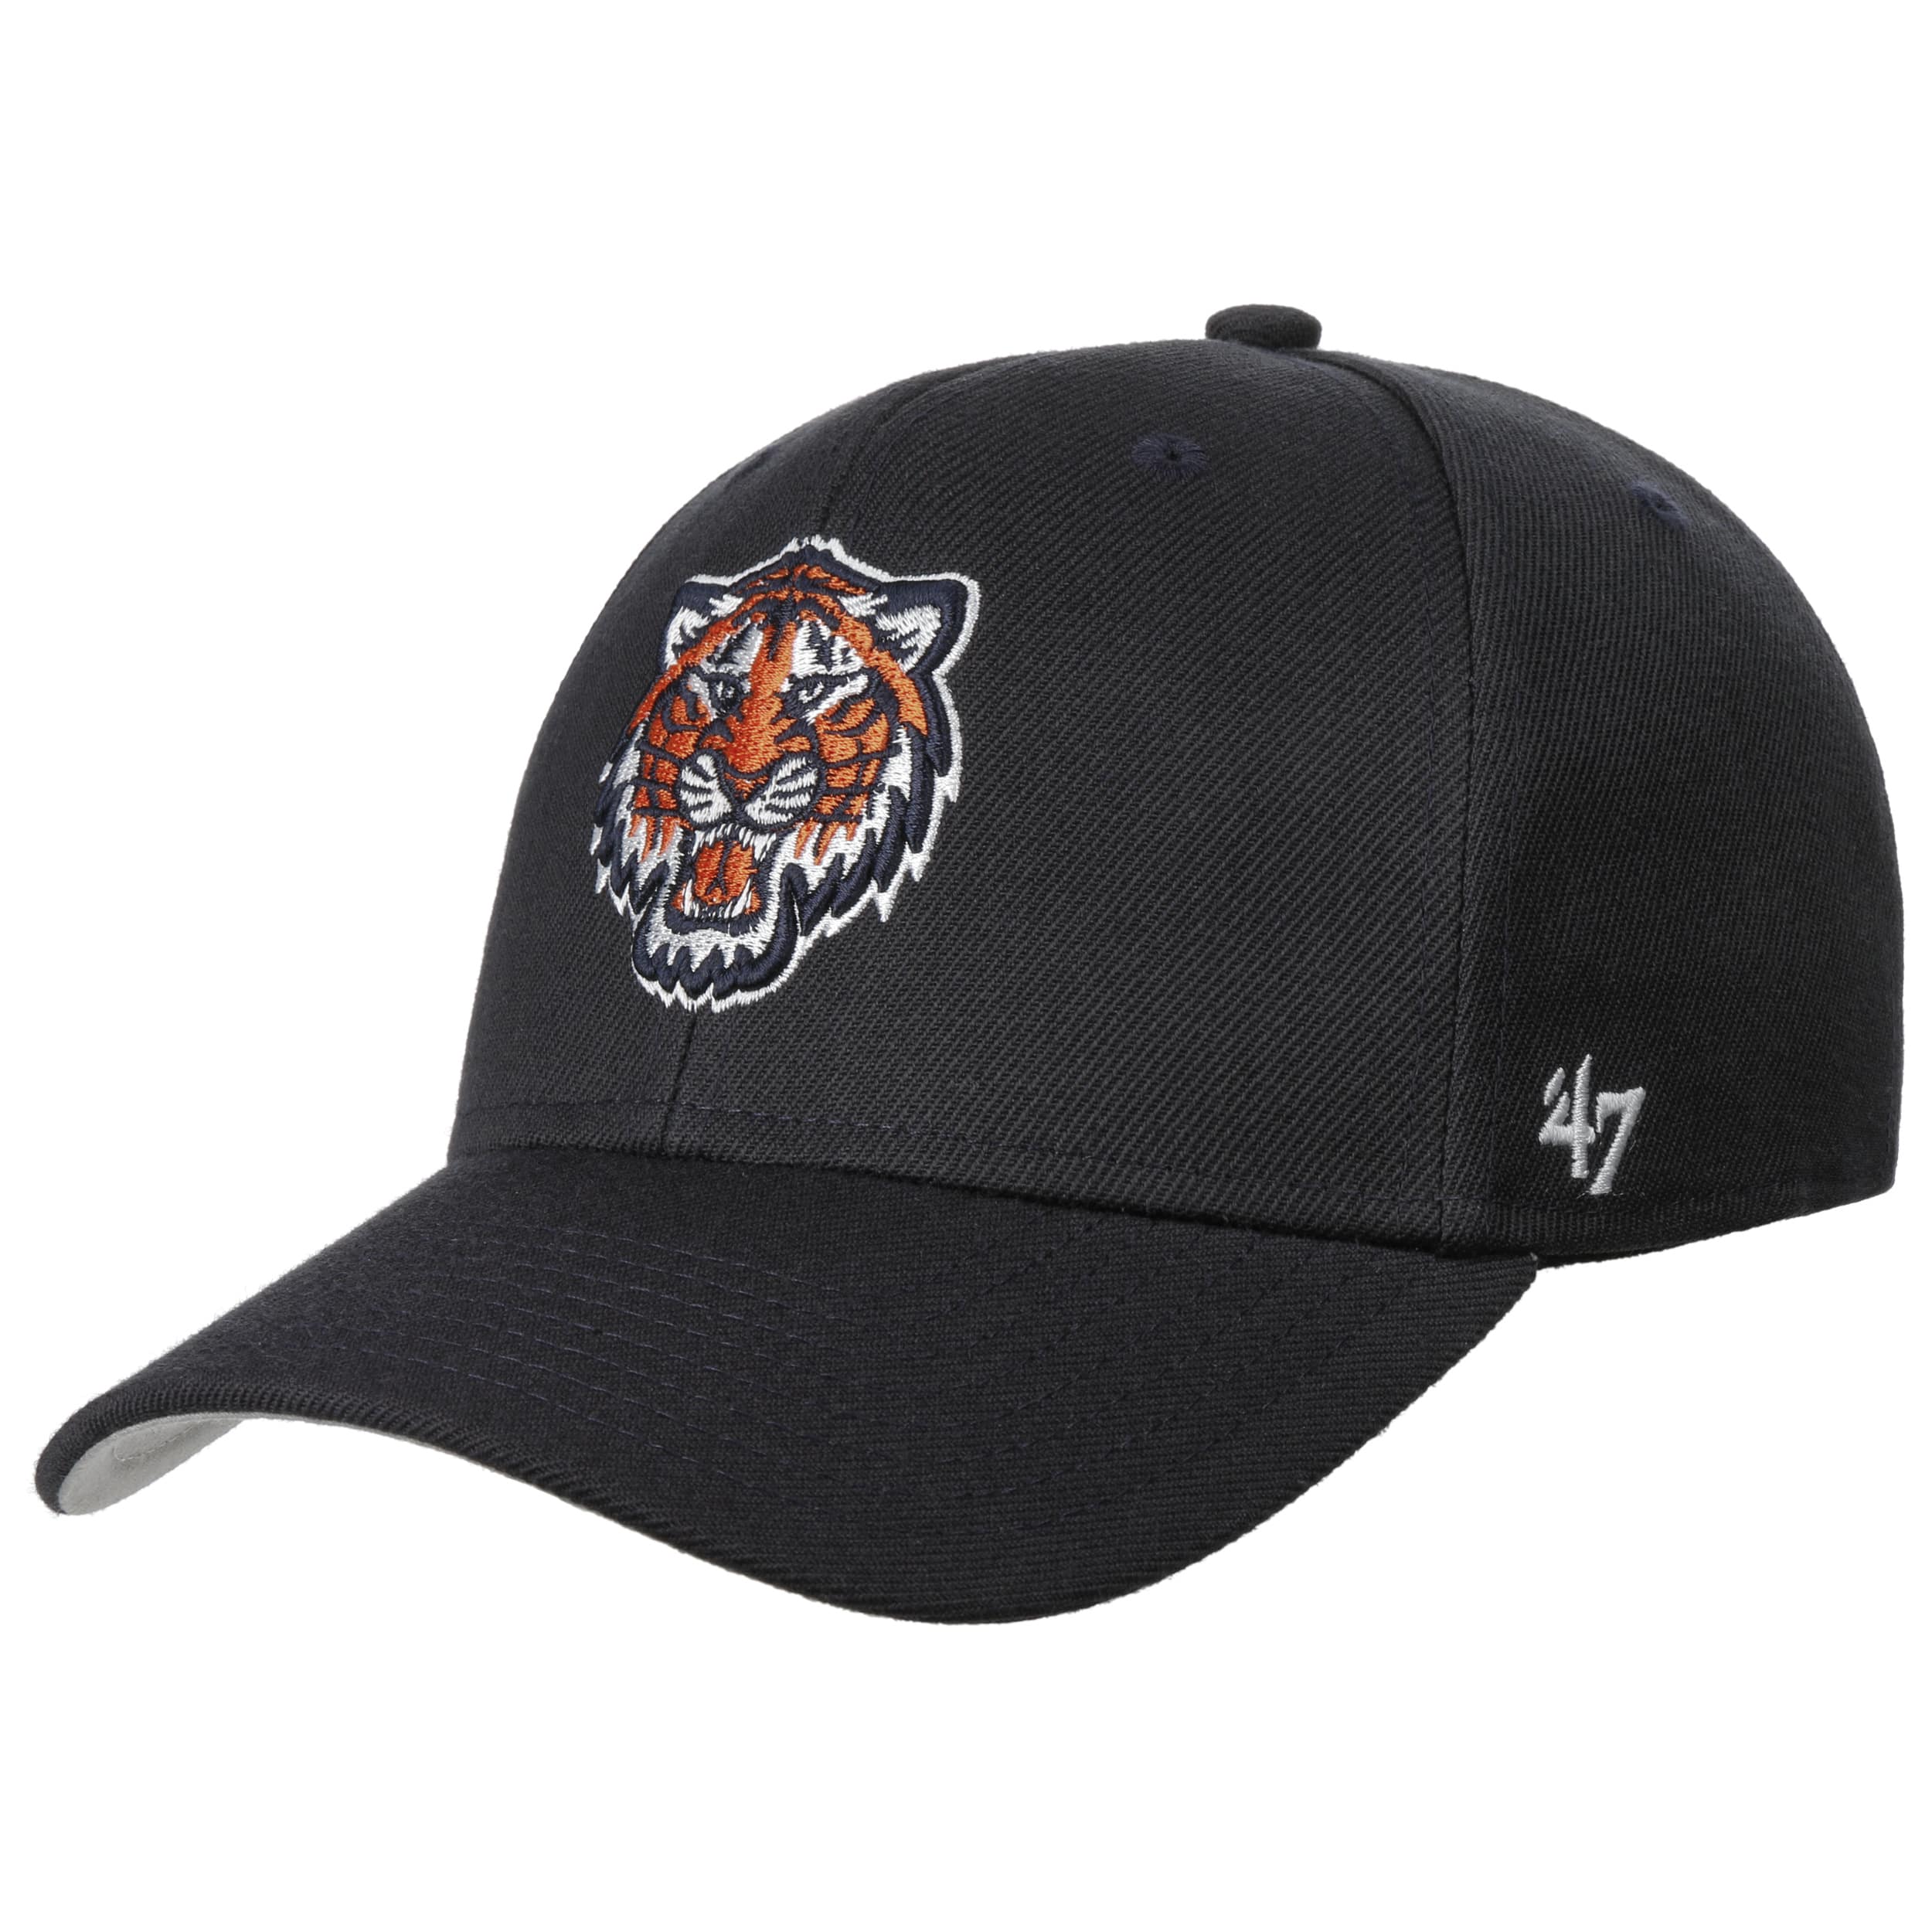 15 Detroit Tigers Fans ideas  detroit tigers, tiger fans, detroit